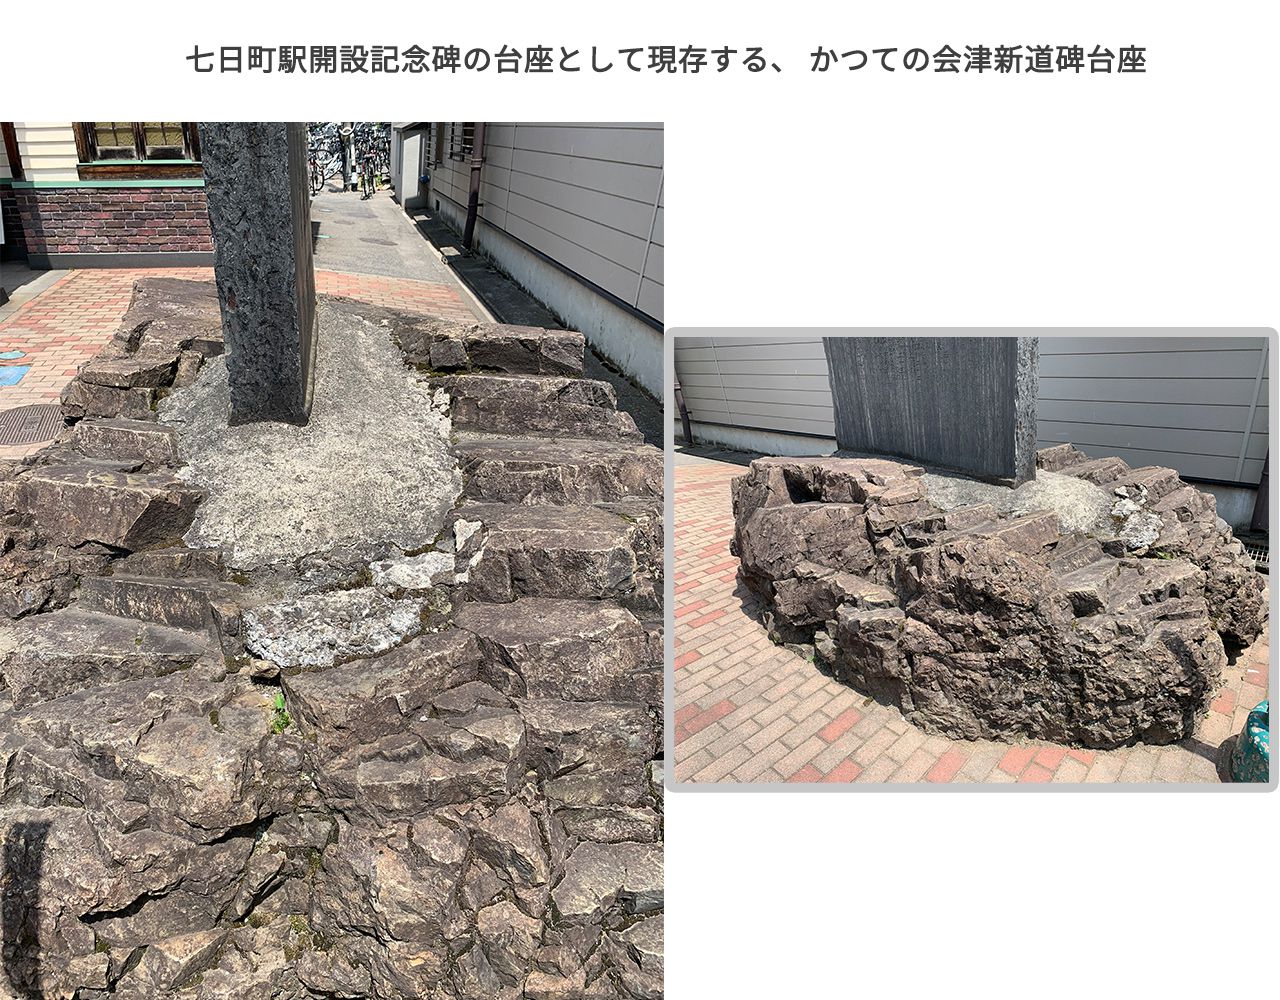 現存する会津新道碑の台座